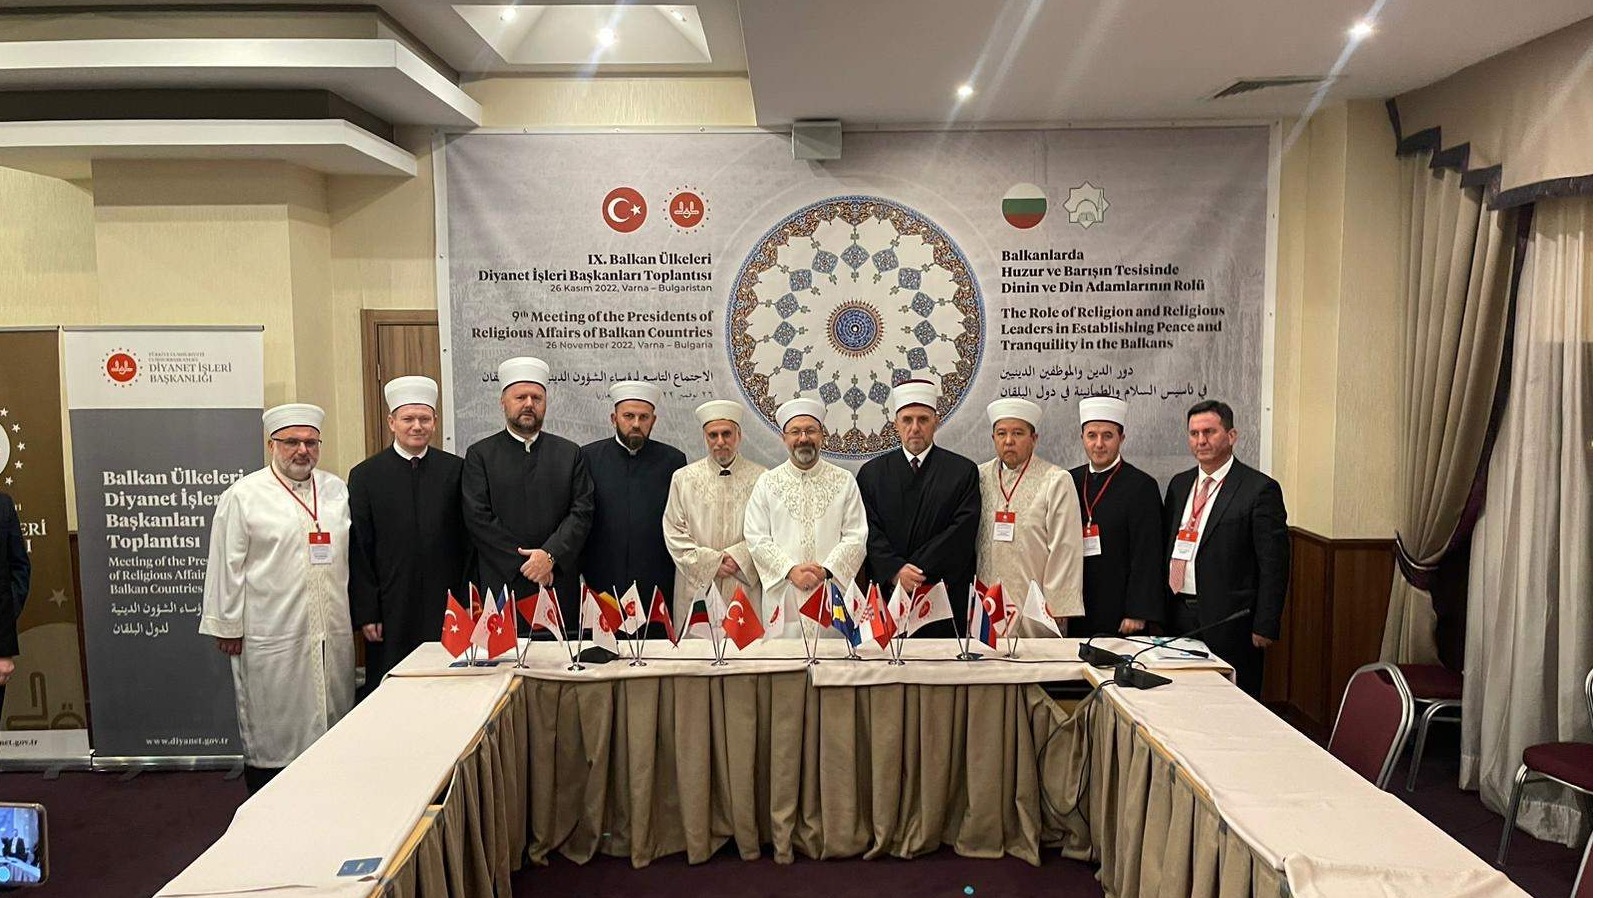 Bugarska: Održan skup "Uloga vjere i vjerskih lidera u izgradnji mira i sigurnosti u zemljama Balkana"